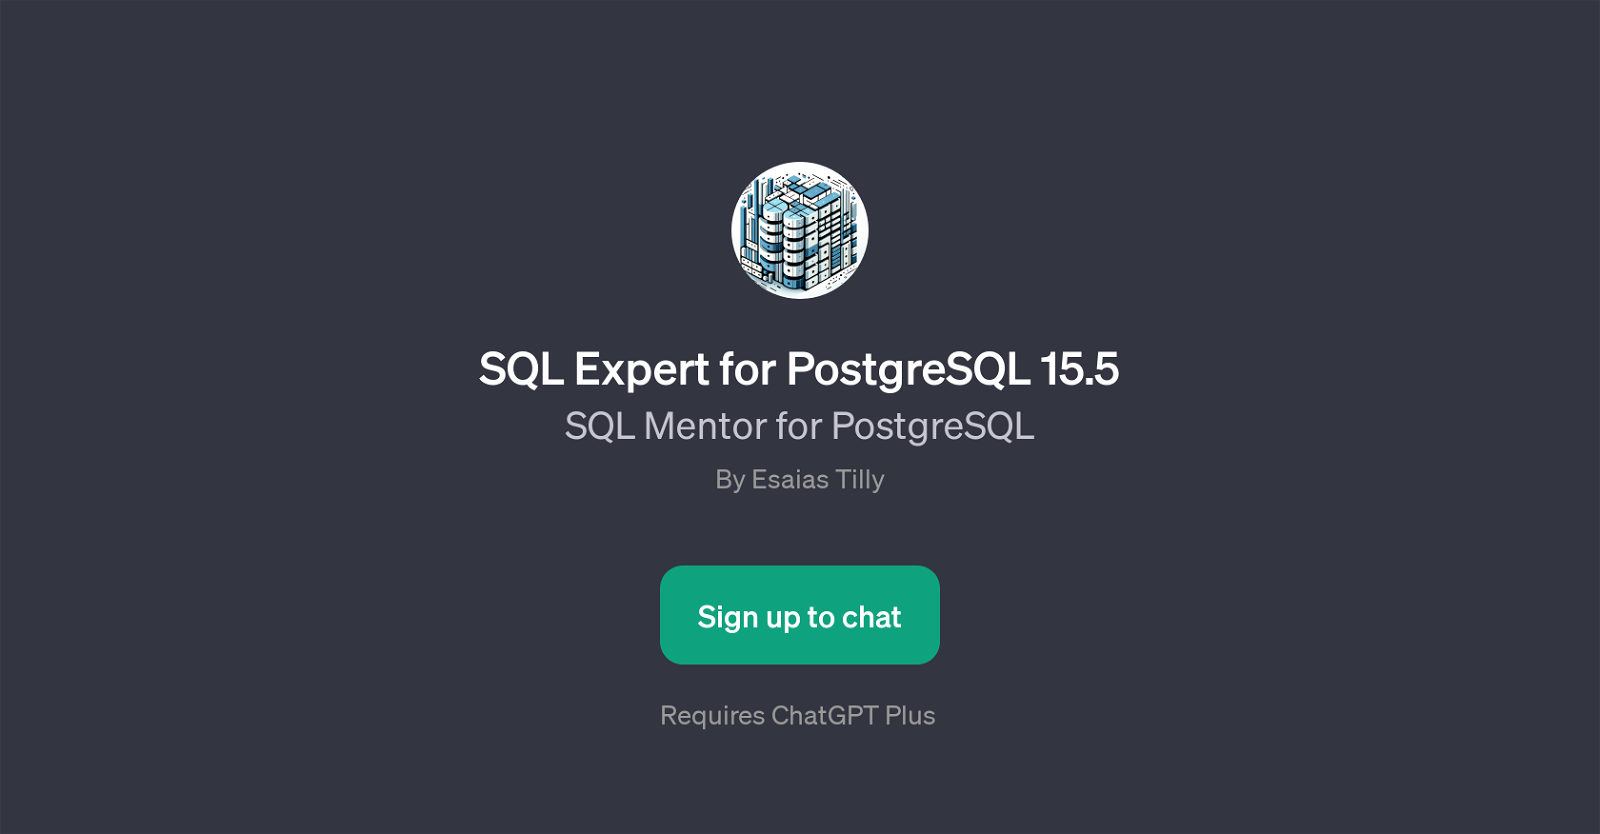 SQL Expert for PostgreSQL 15.5 website